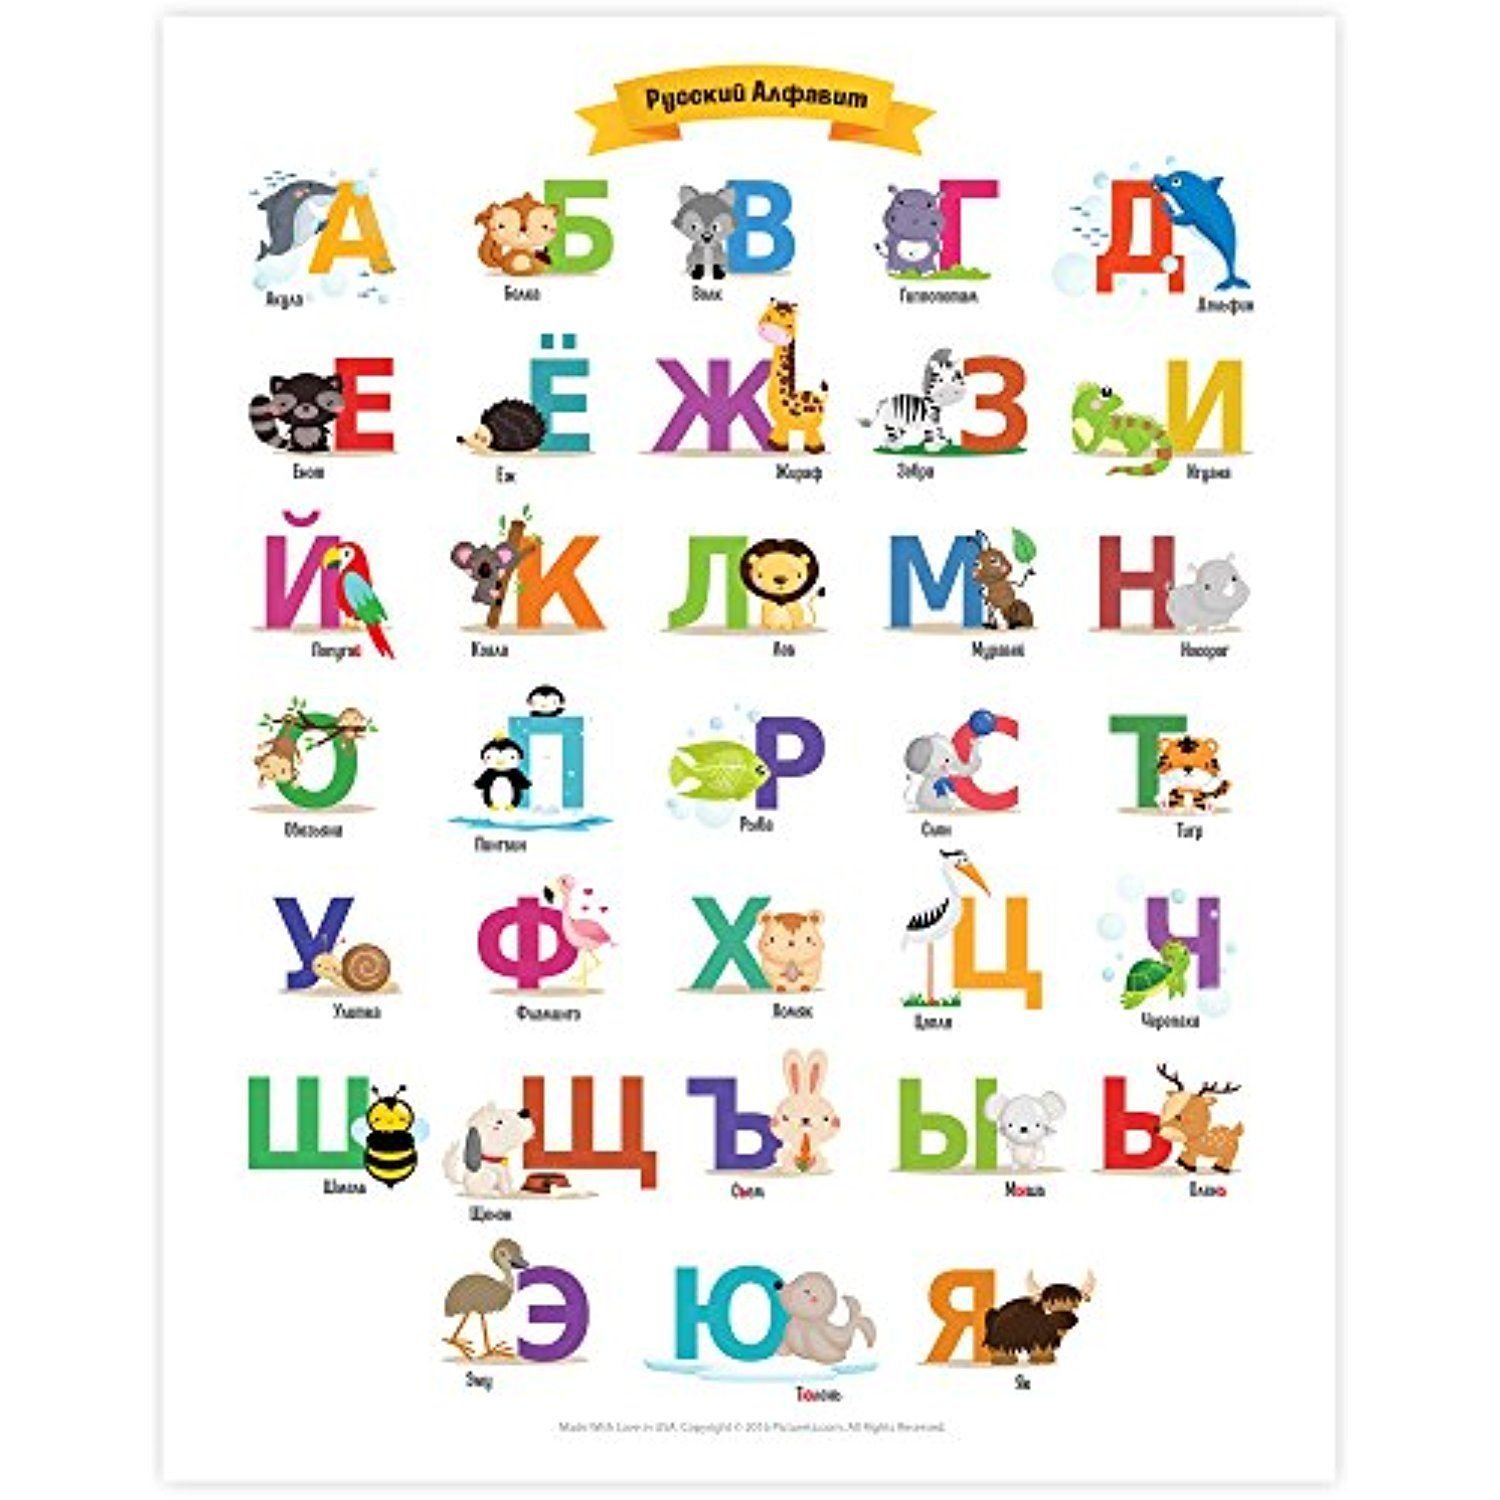 Русский язык садик. Алфавит русский для детей. Красочный алфавит для детей. Русский алавит для детей. Детский алфавит в картинках.